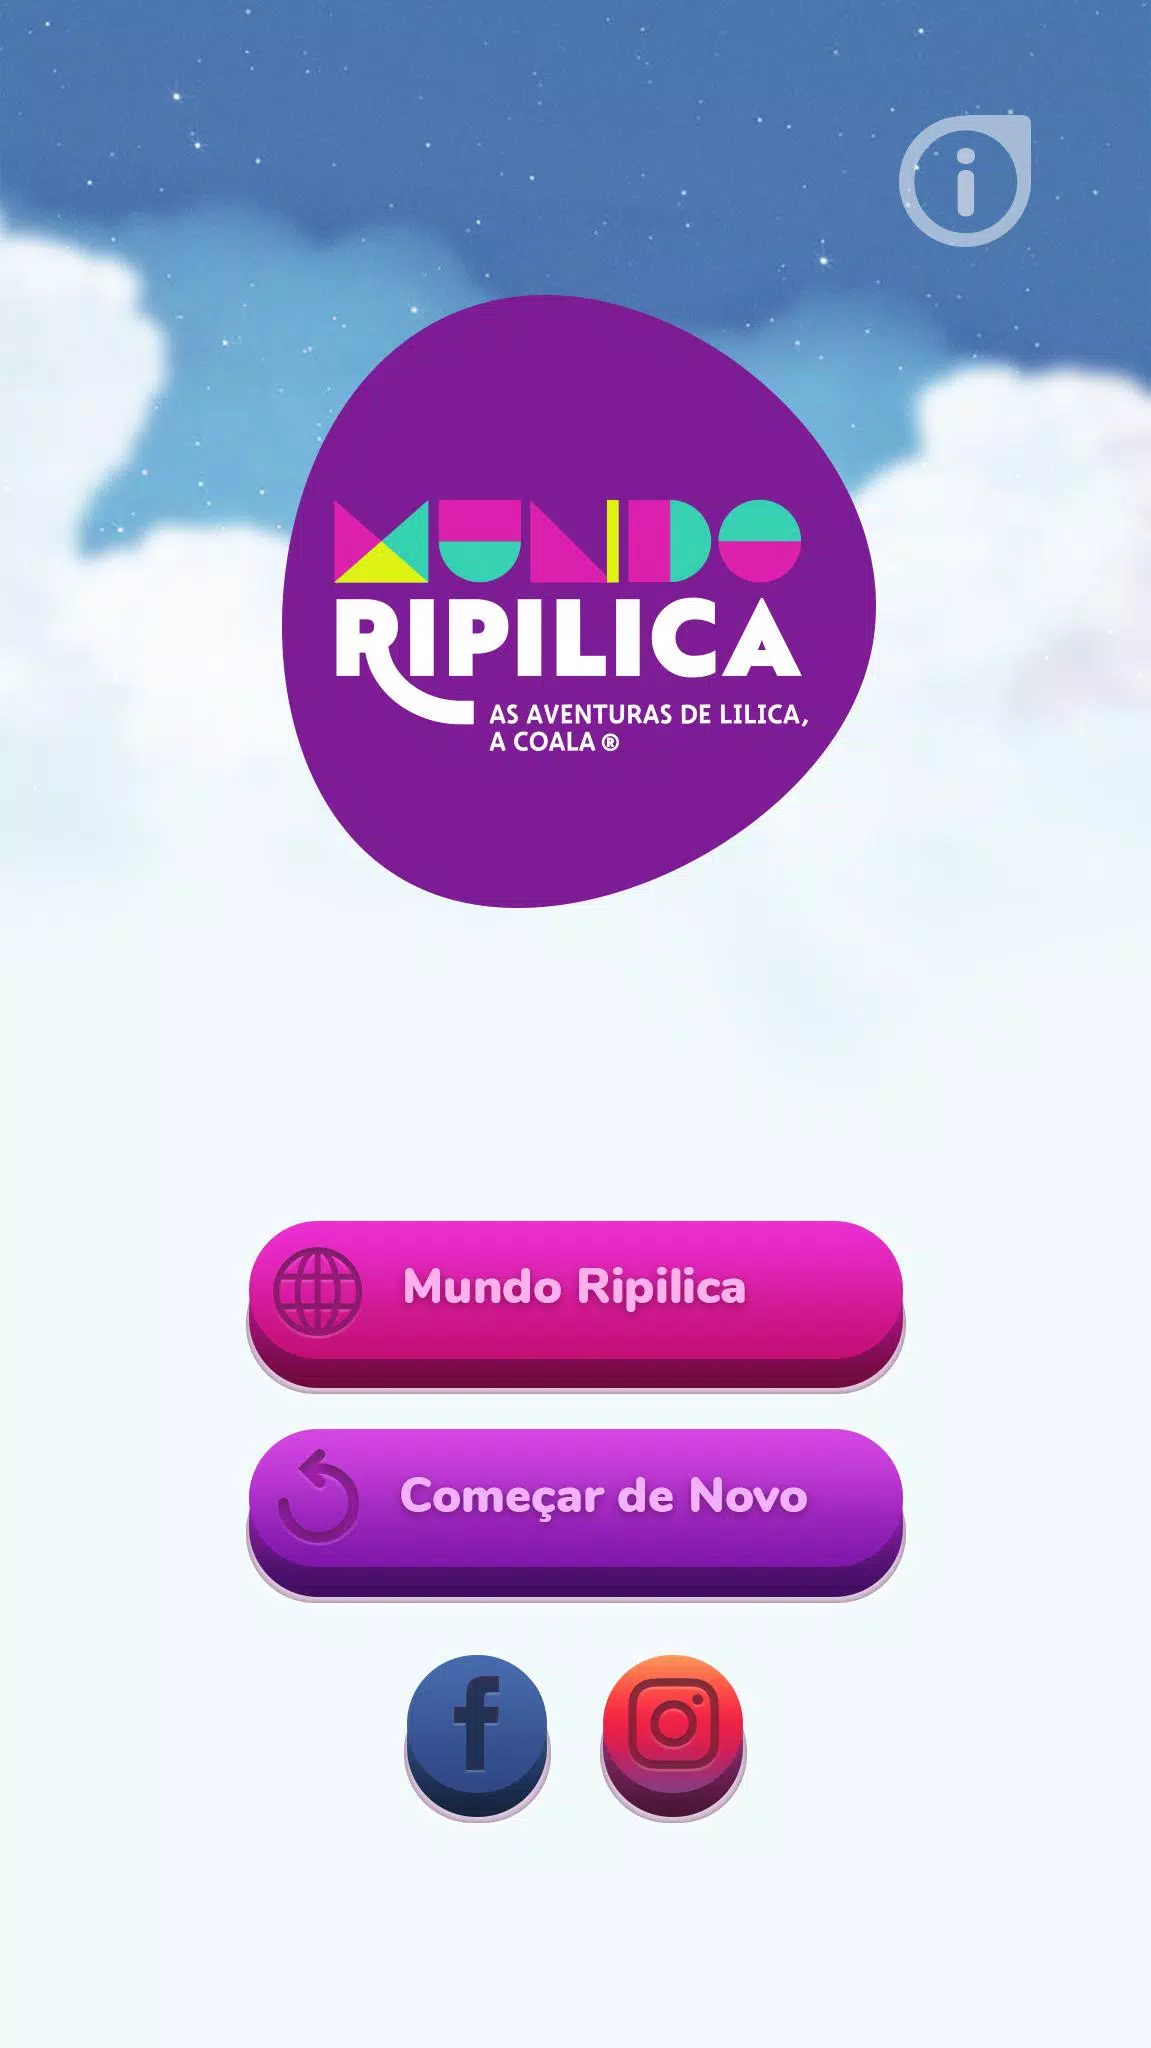 Prime Video: Mundo Ripilica - As Aventuras de Lilica, a Coala